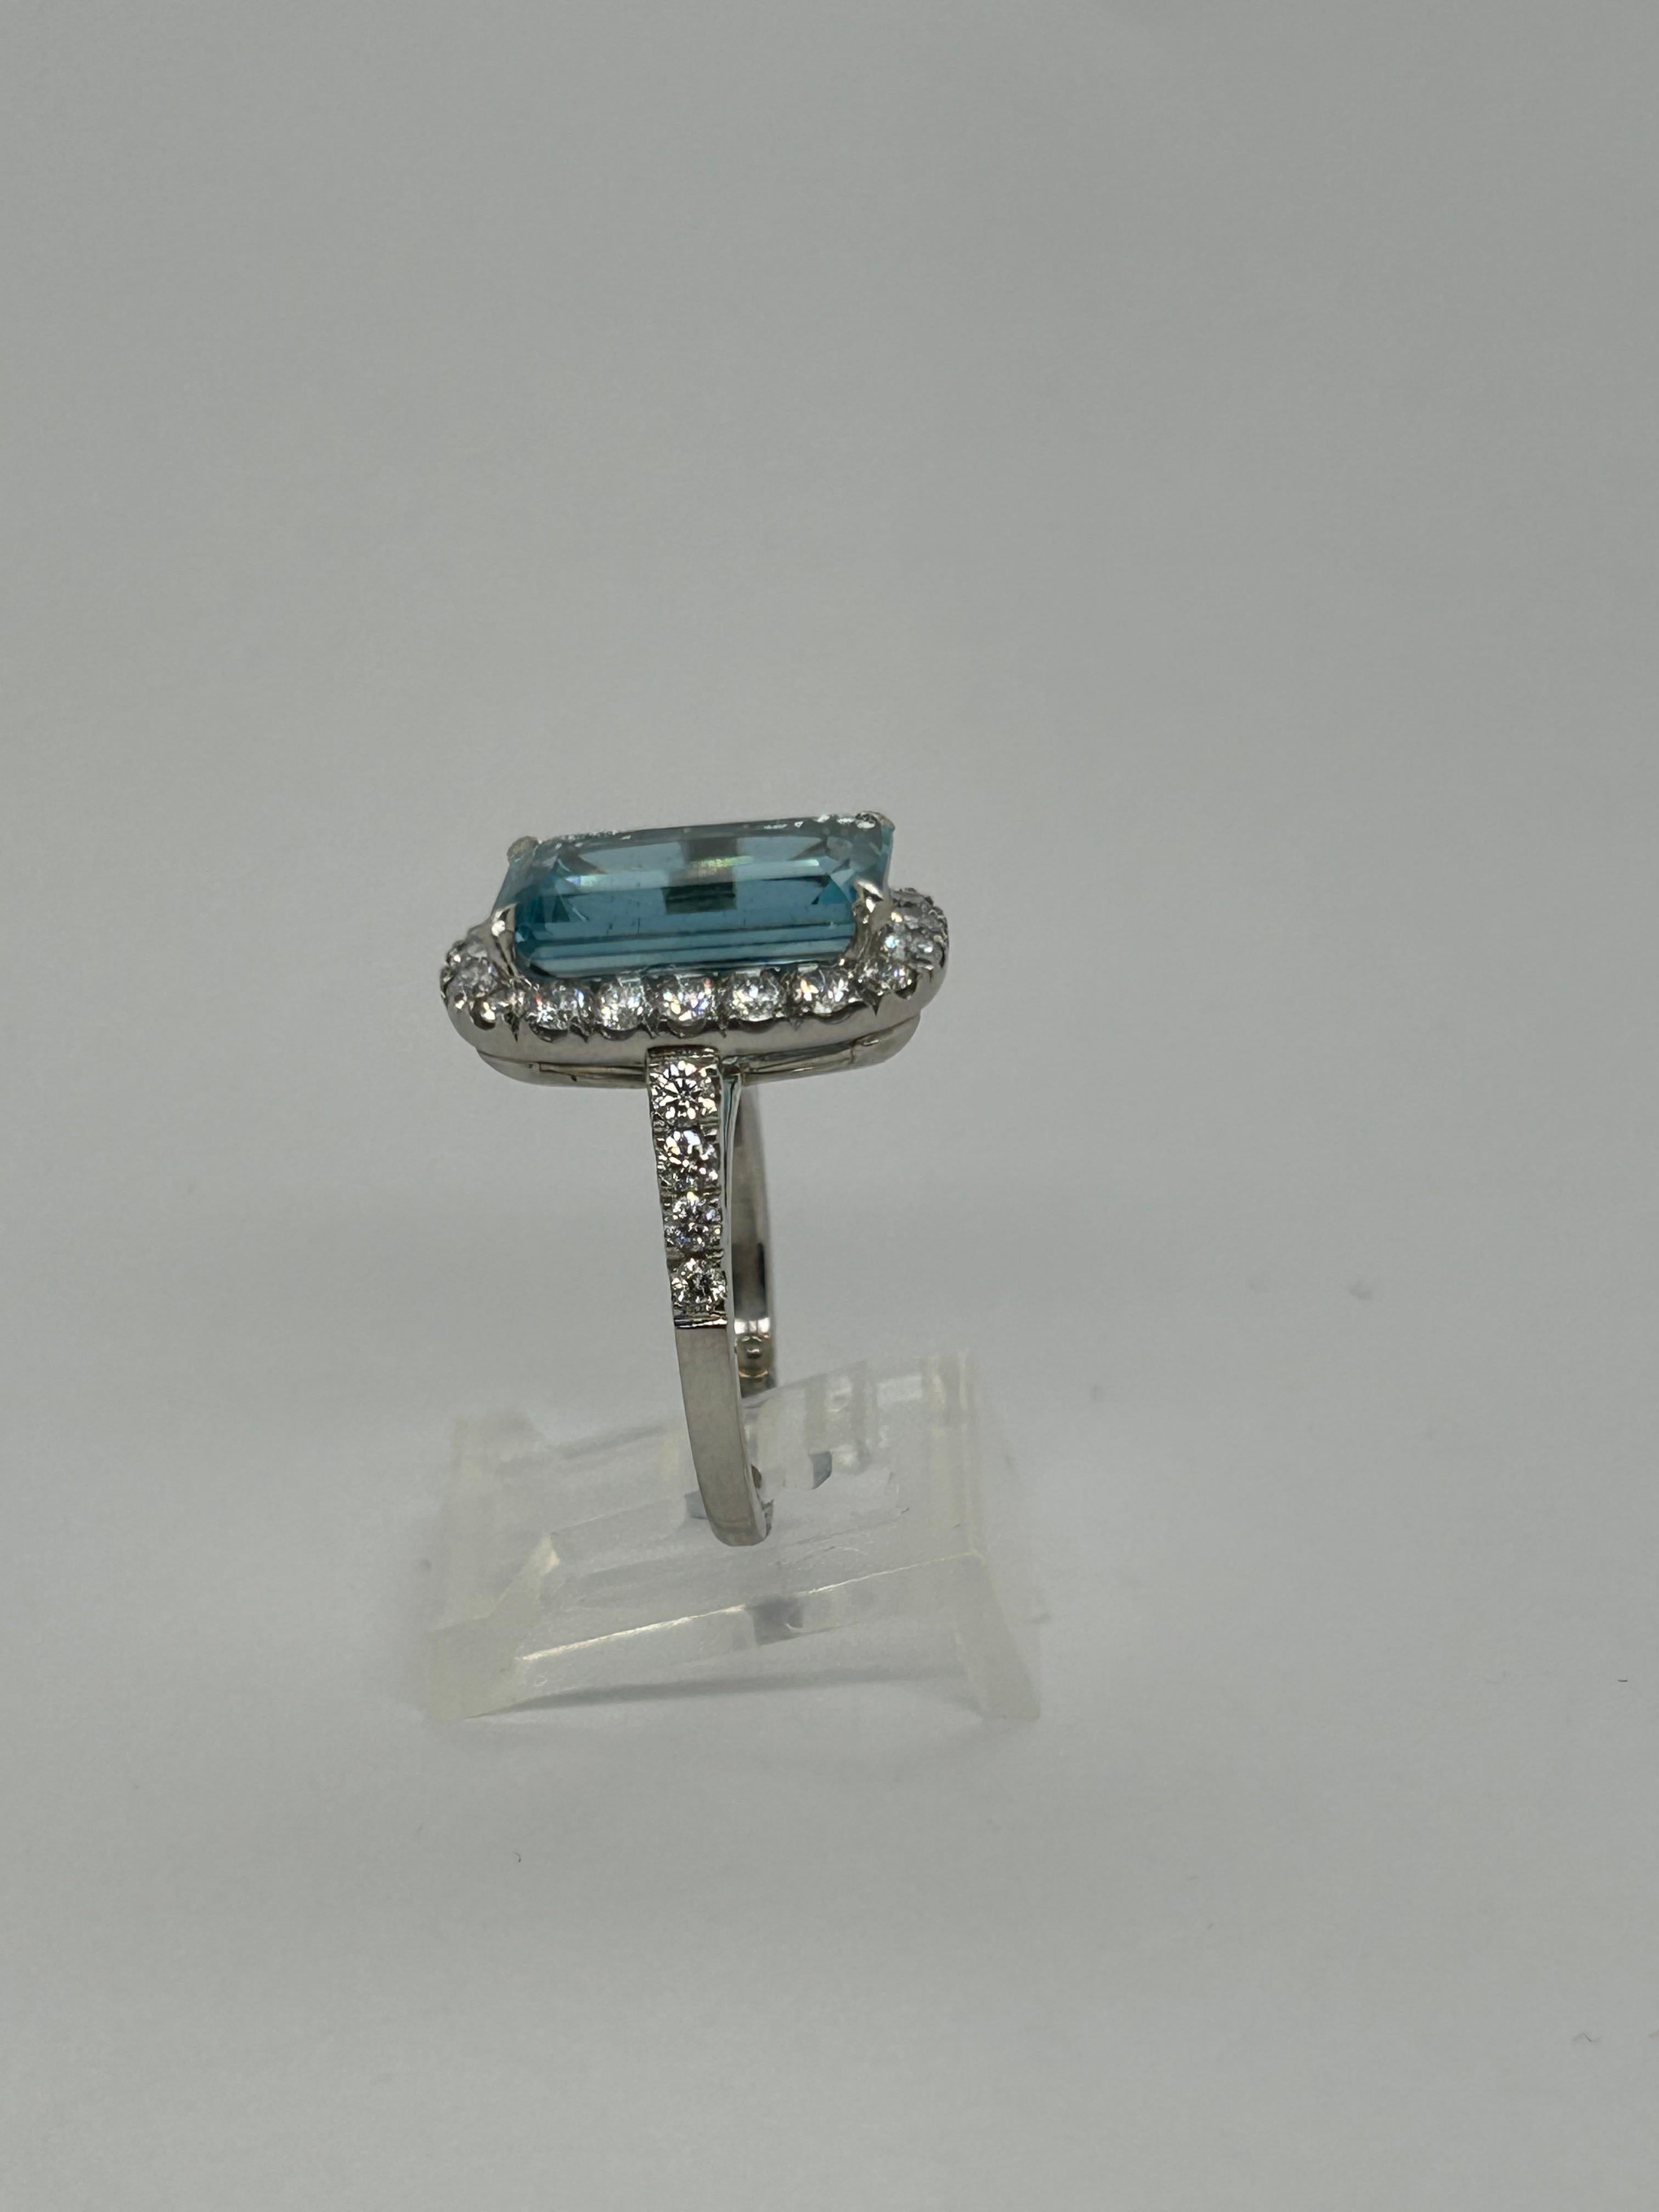 1950' Bague aigue-marine diamant en platine. aigue-marine env. 11.0 cts Diamant env. 2.5 cts F-G couleur VS.
taille de l'anneau : avec protège-anneau 3,25, sans protège-anneau environ 4,25
